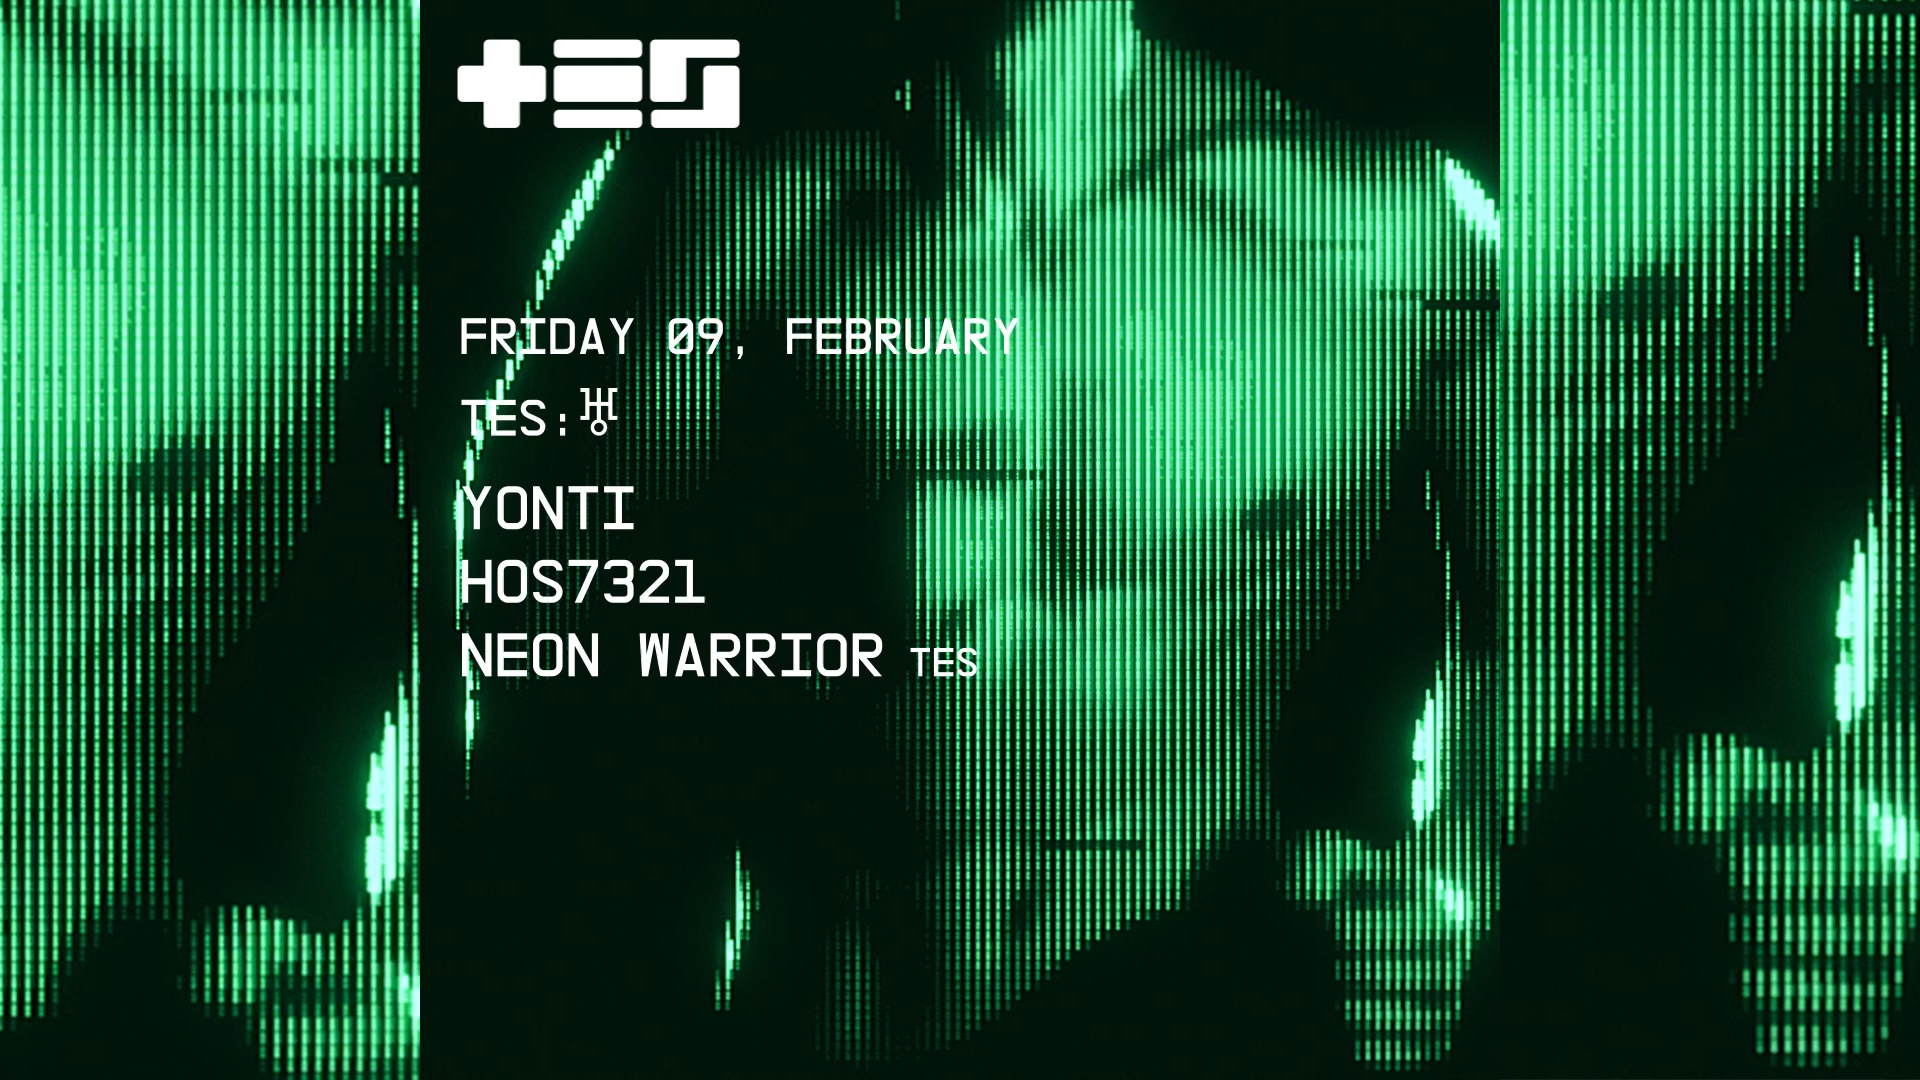 HOS7321, Yonti, Neon Warrior - フライヤー表